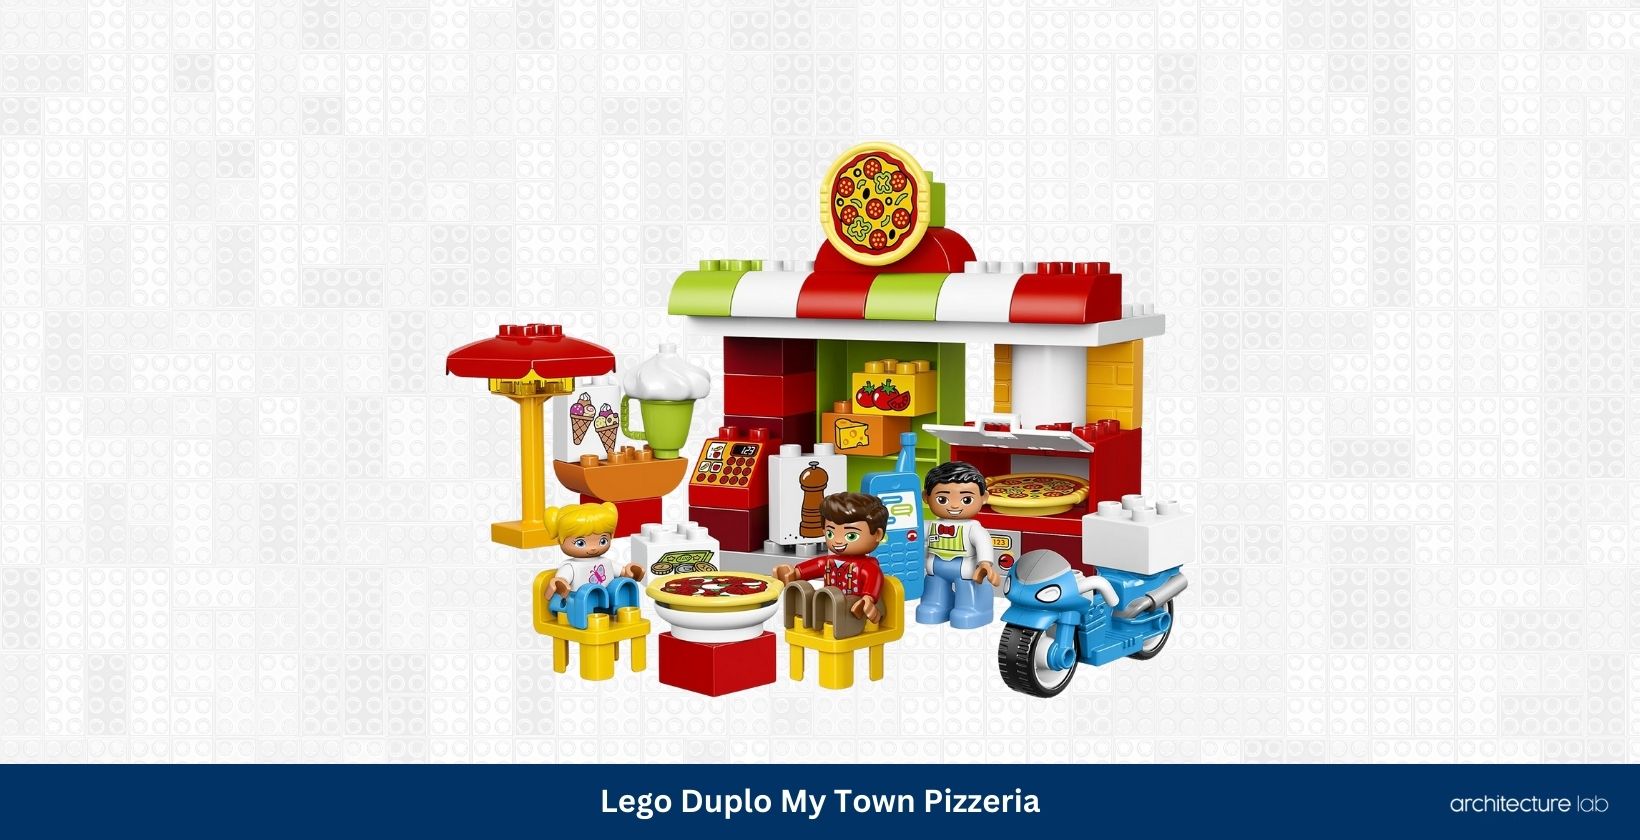 Lego duplo my town pizzeria